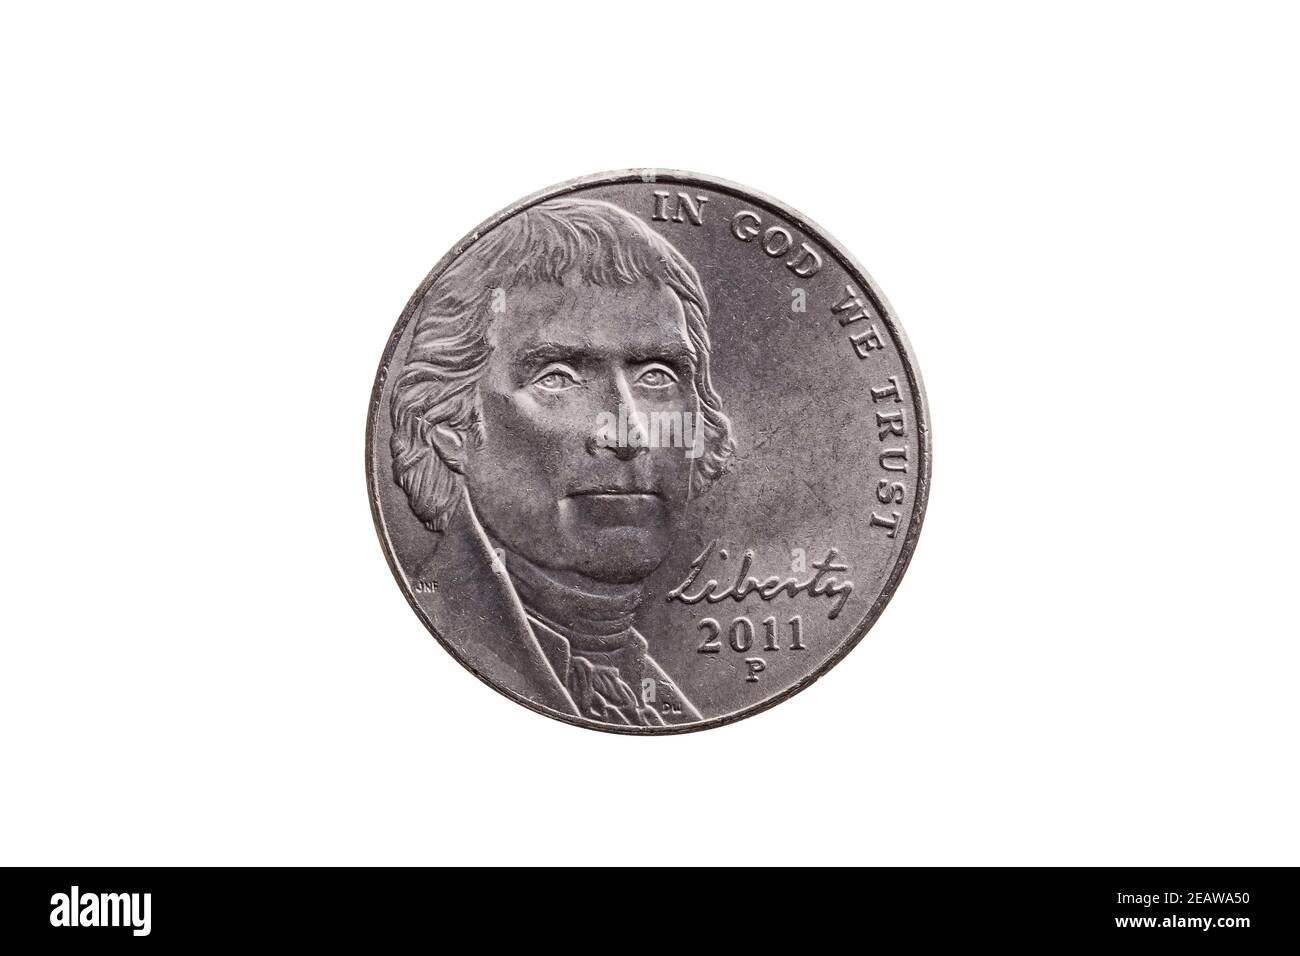 Moneta di nickel half dime USA (25 centesimi) Con un ritratto immagine di Thomas Jefferson tagliato fuori e. isolato Foto Stock